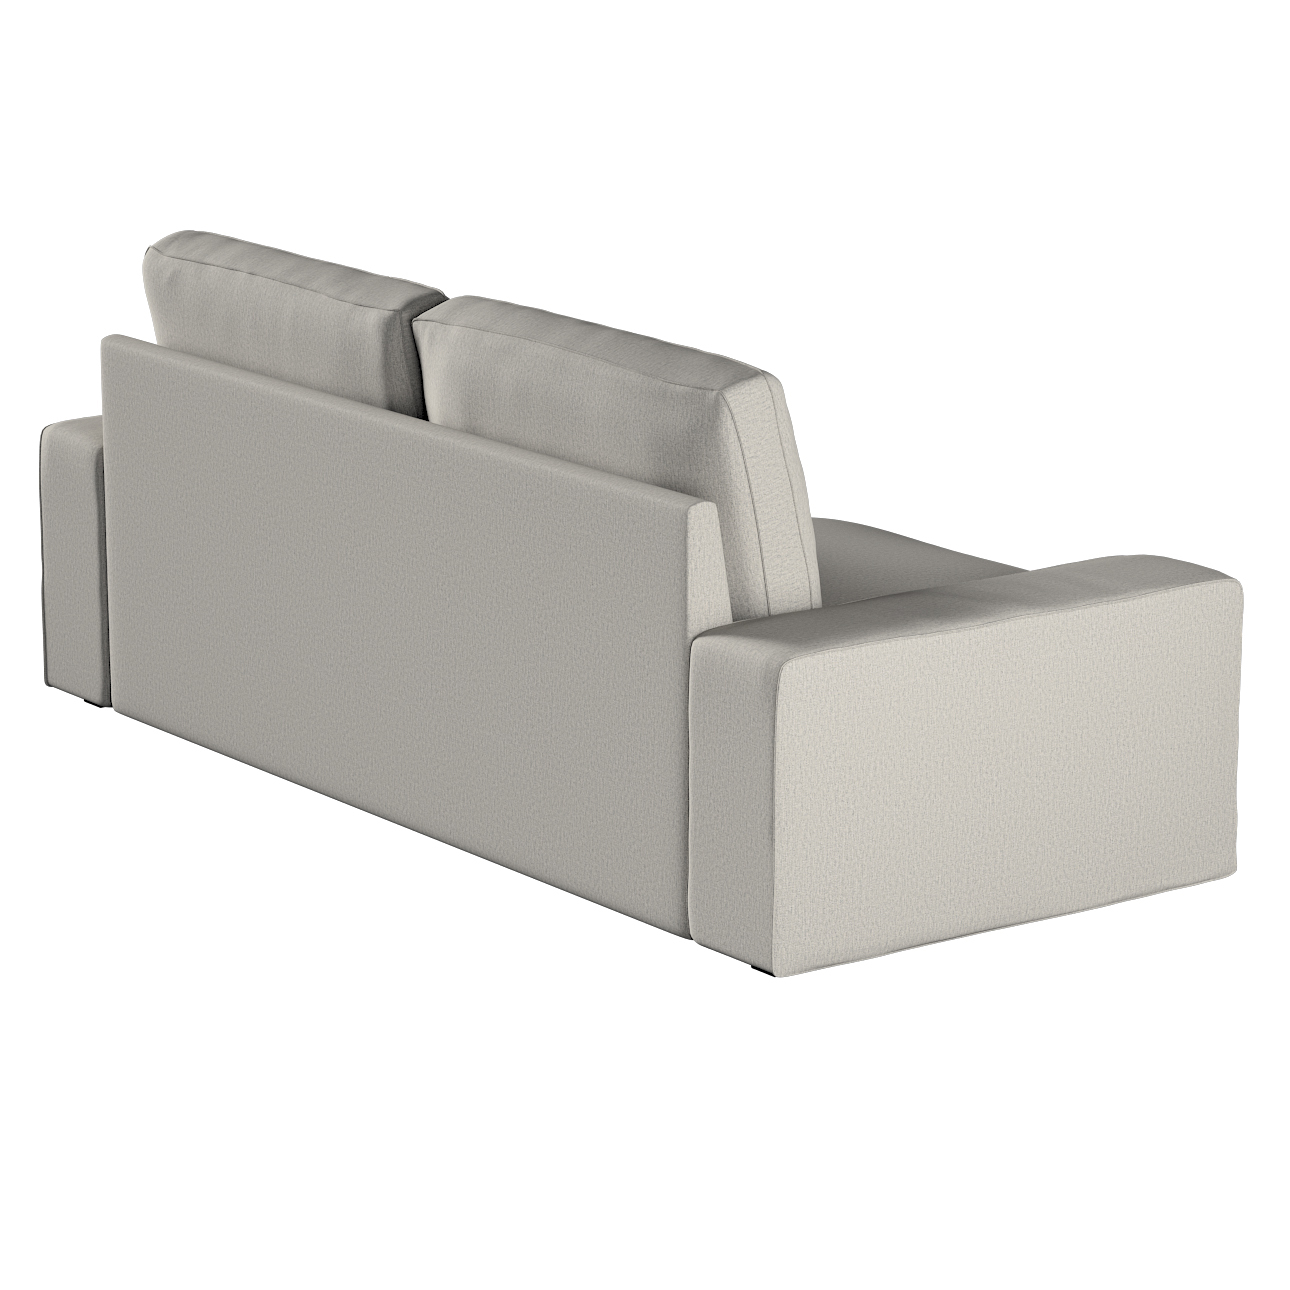 Bezug für Kivik 3-Sitzer Sofa, grau, Bezug für Sofa Kivik 3-Sitzer, Madrid günstig online kaufen